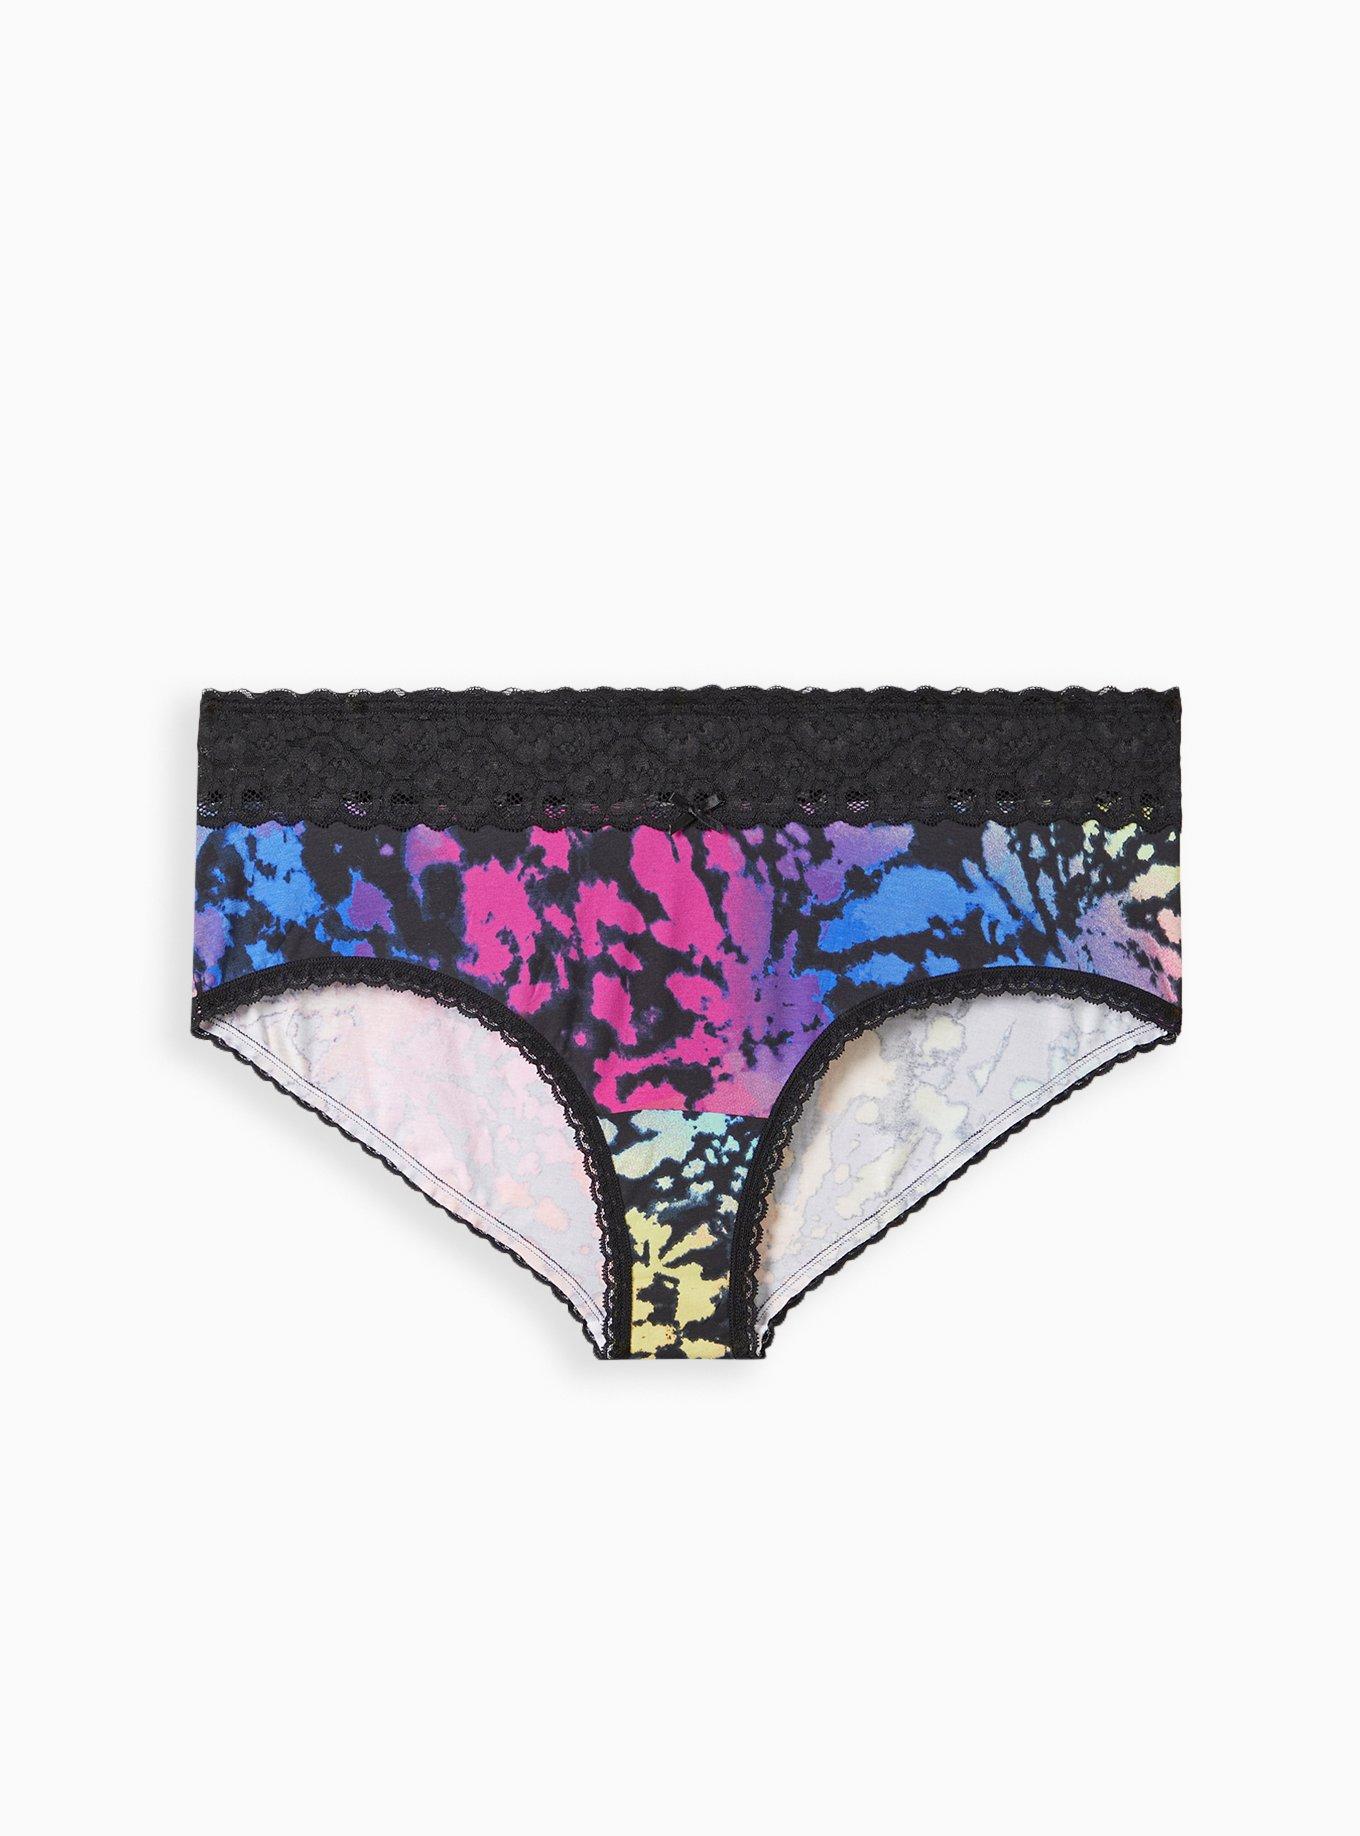 Be Lovely Tie Dye Women's Underwear hanes Women's Regular Briefs Size 9 one  of a Kind -  Canada